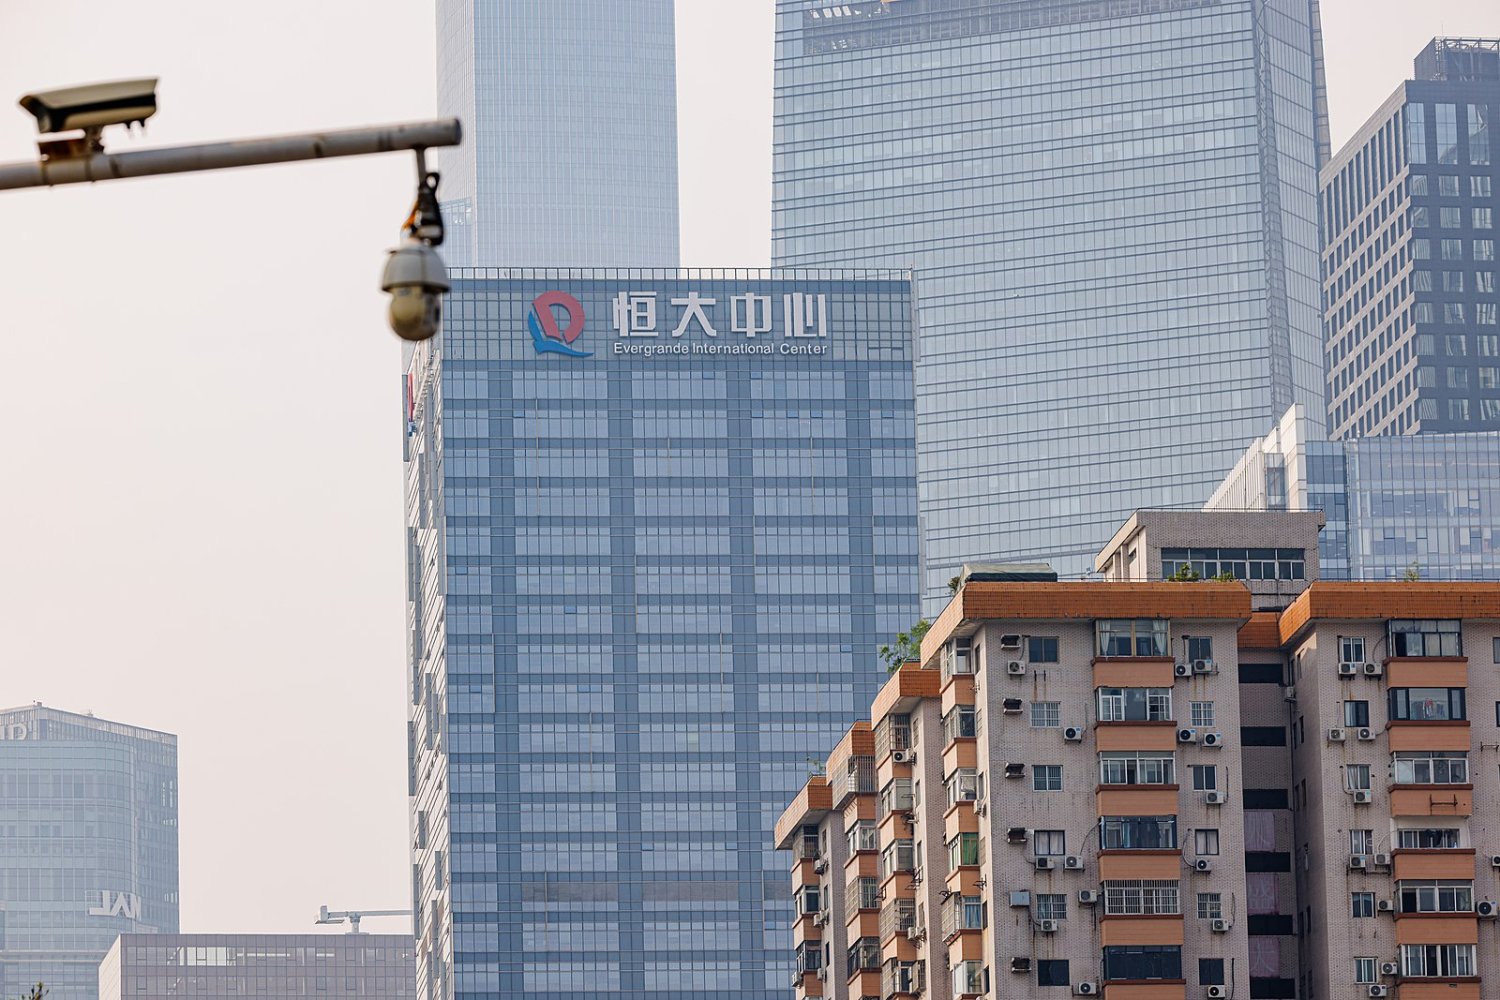 Evergrande placé en liquidation judiciaire : la crise de l'immobilier chinois s'aggrave encore